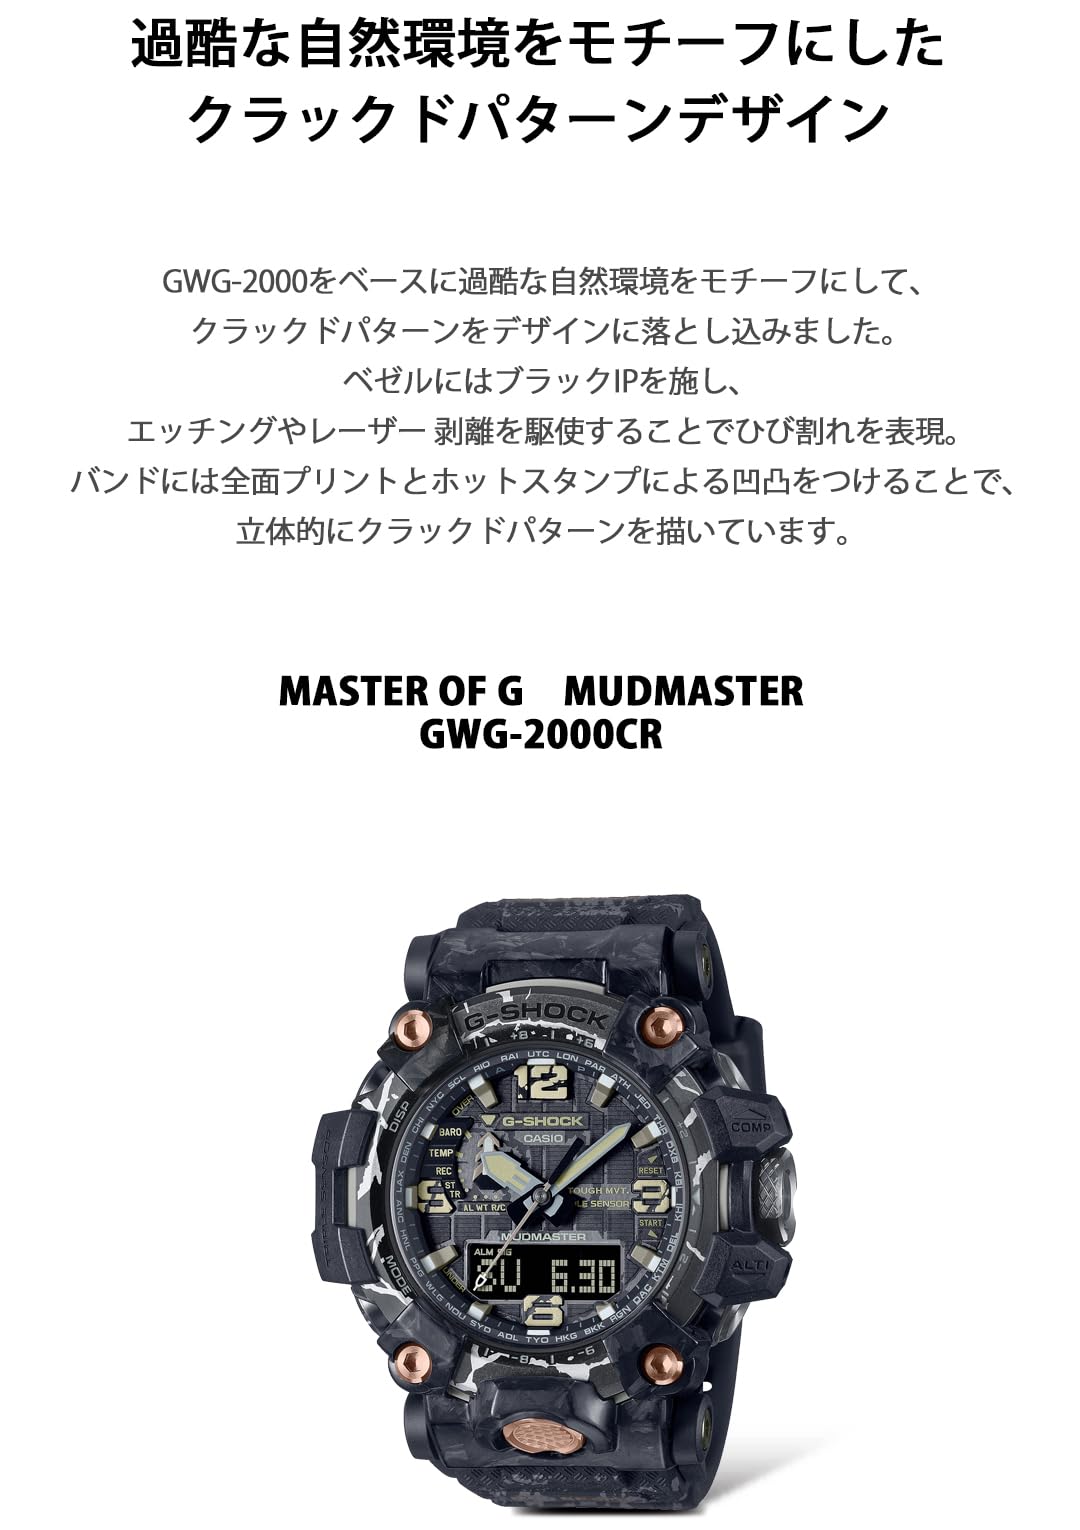 [カシオ] 腕時計 ジーショック 【国内正規品】 MUDMASTER 電波ソーラー GWG-2000CR-1AJF メンズ ブラック - BanzaiHobby